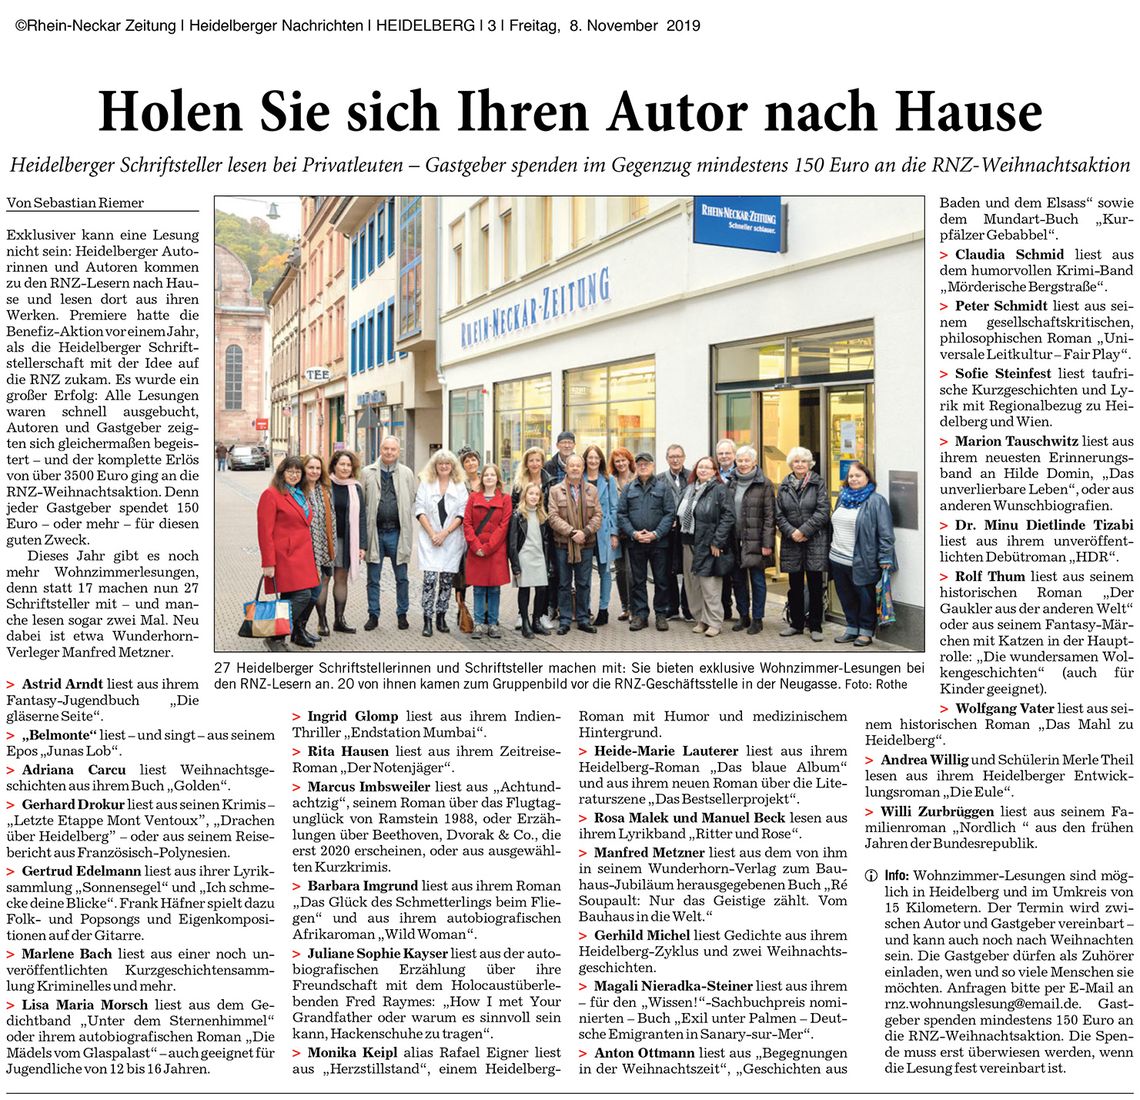 Artikel: Heidelberger Autoren lesen bei Privatleuten